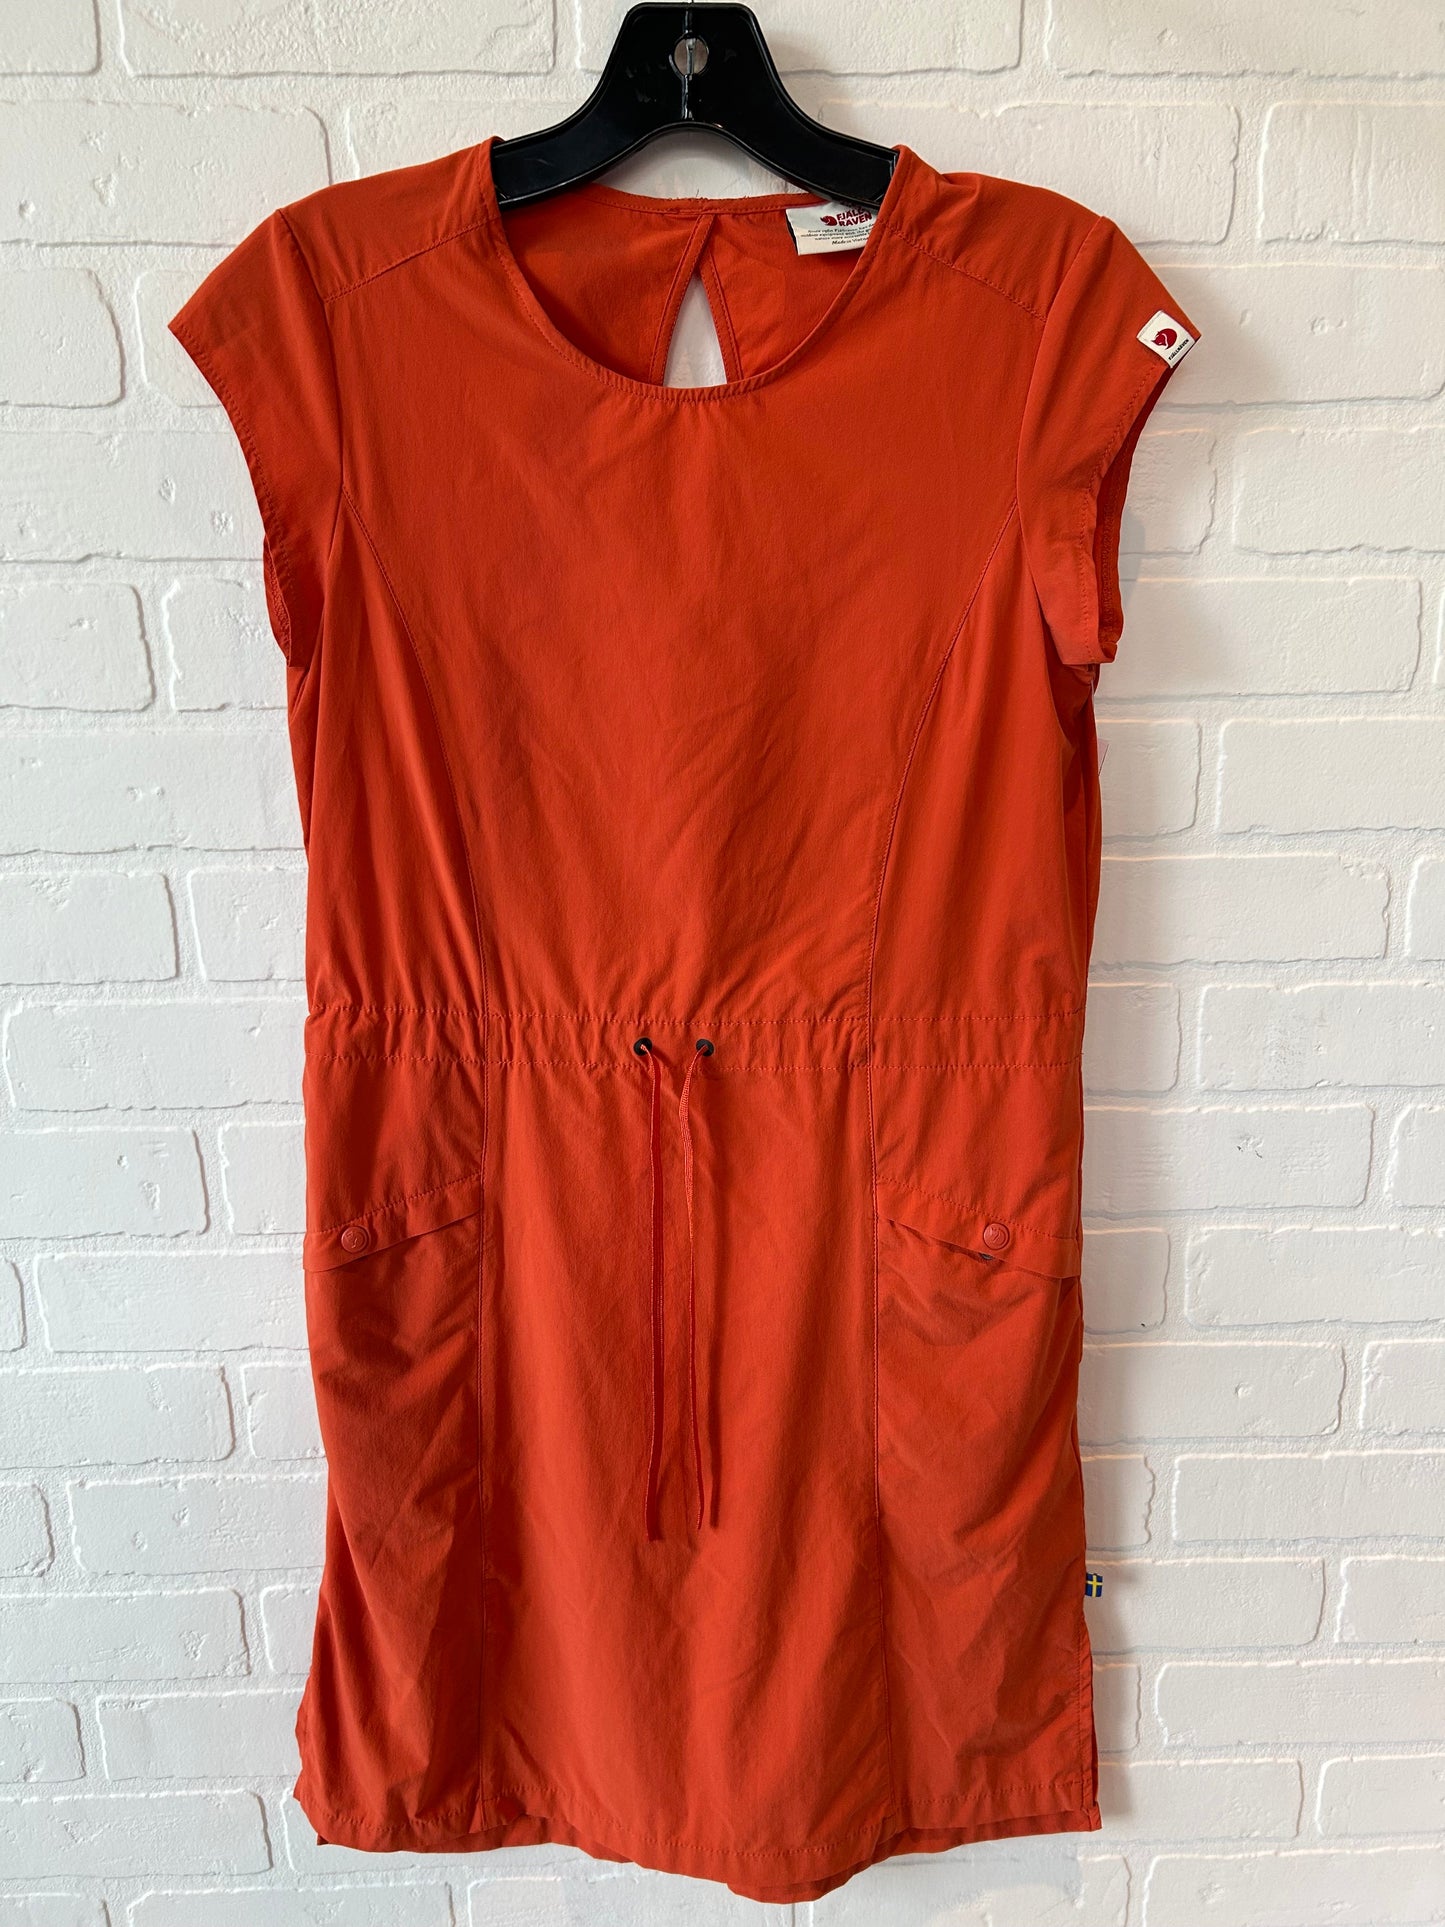 Orange Athletic Dress Cmc, Size Xs